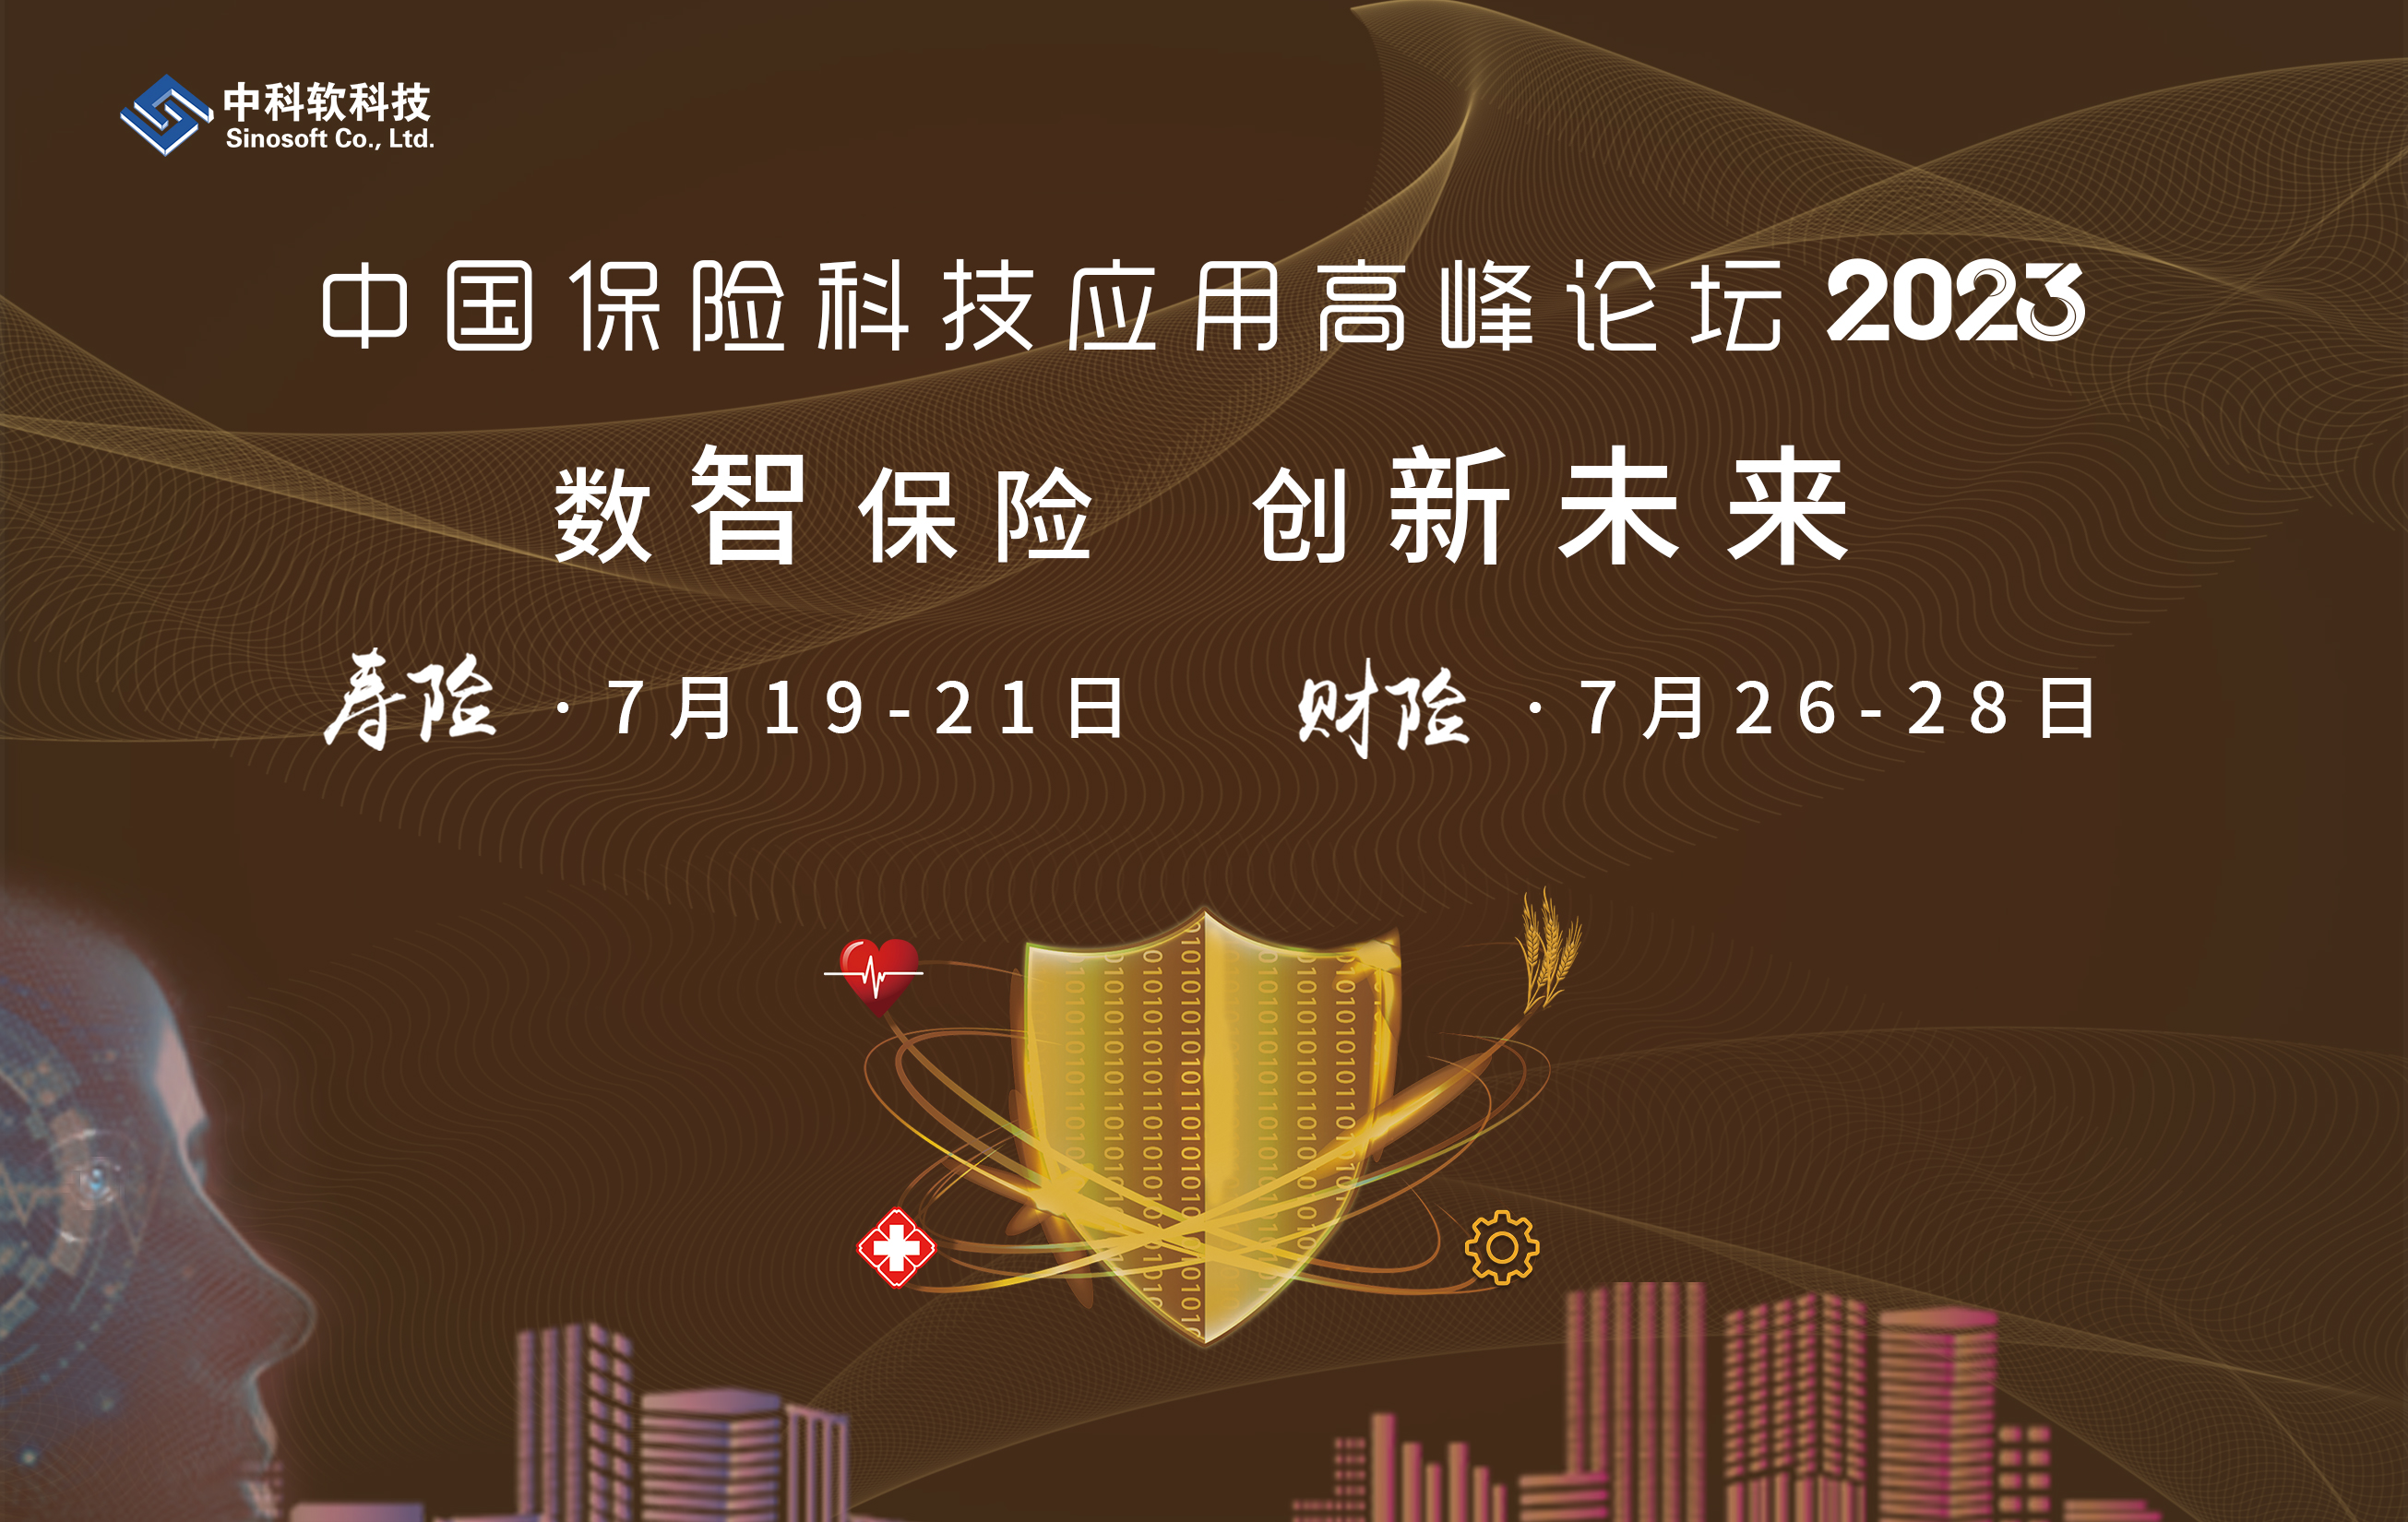 【中国寿险&财险科技应用高峰论坛2023】将于7月在北京召开！ -106498-1